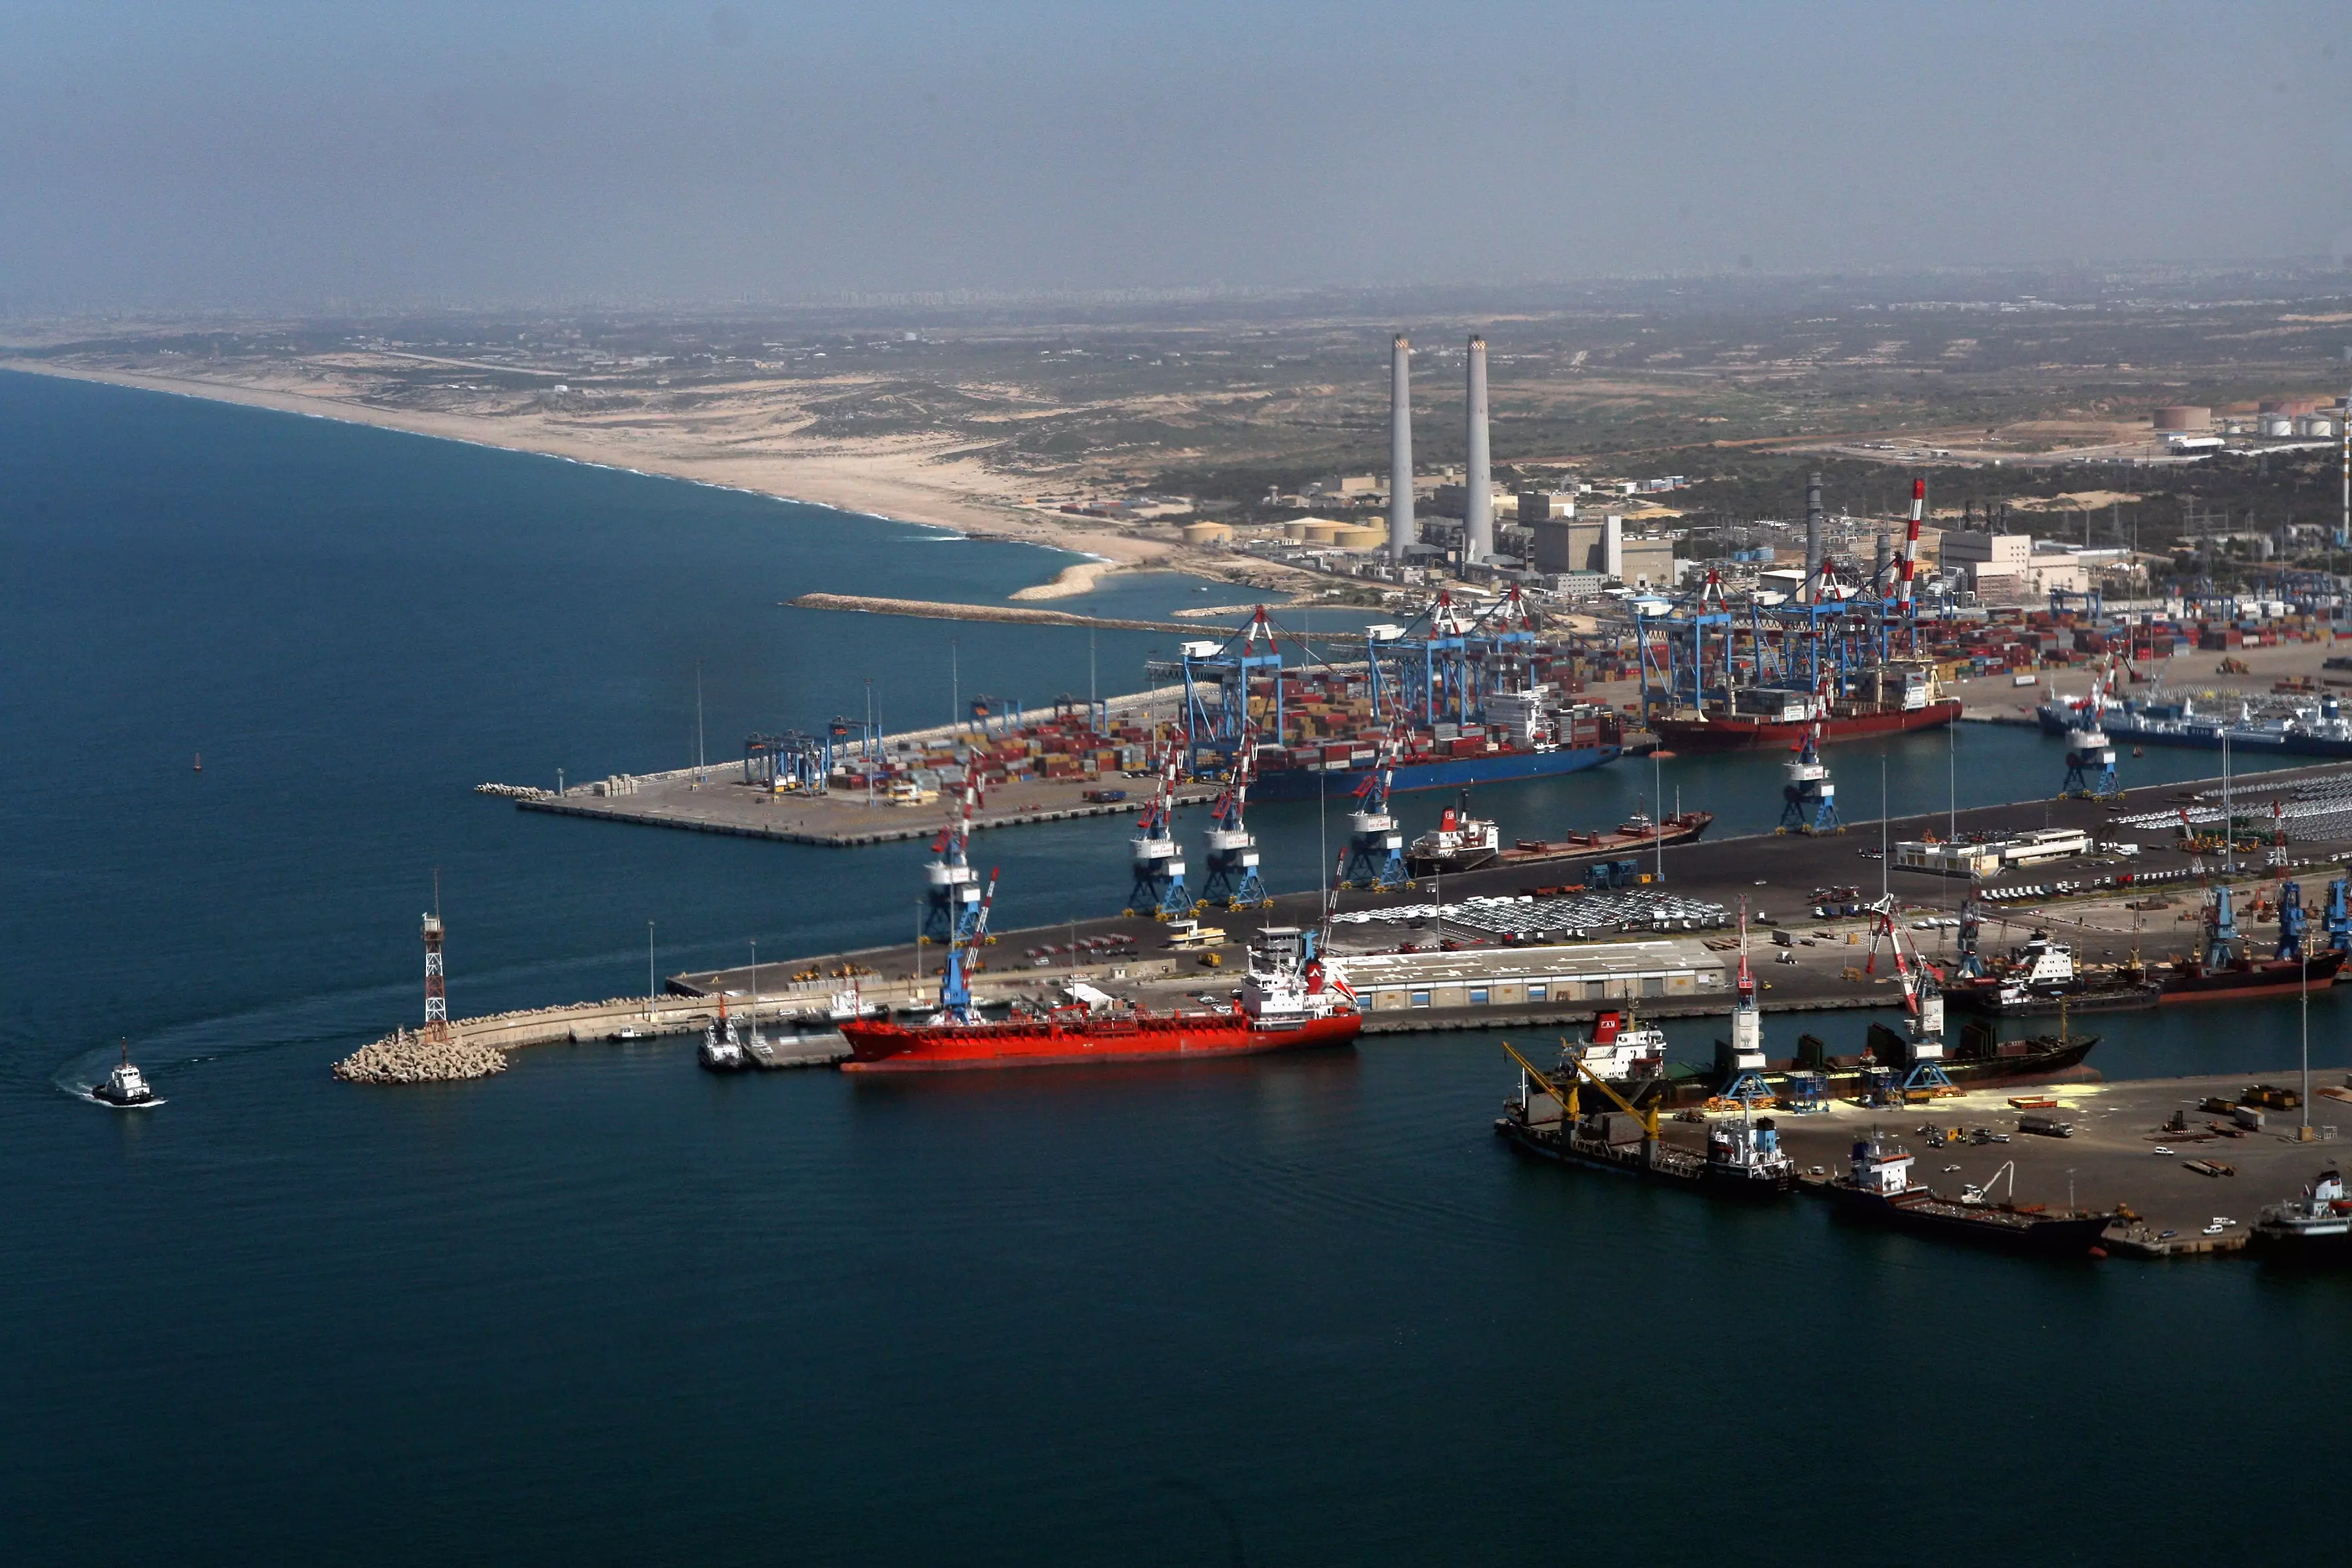 בשלב זה מתנהל עדיין מו"מ בין חנ"י לשתי המתמודדות האחרות במכרז לגבי הקמת נמל המפרץ בחיפה